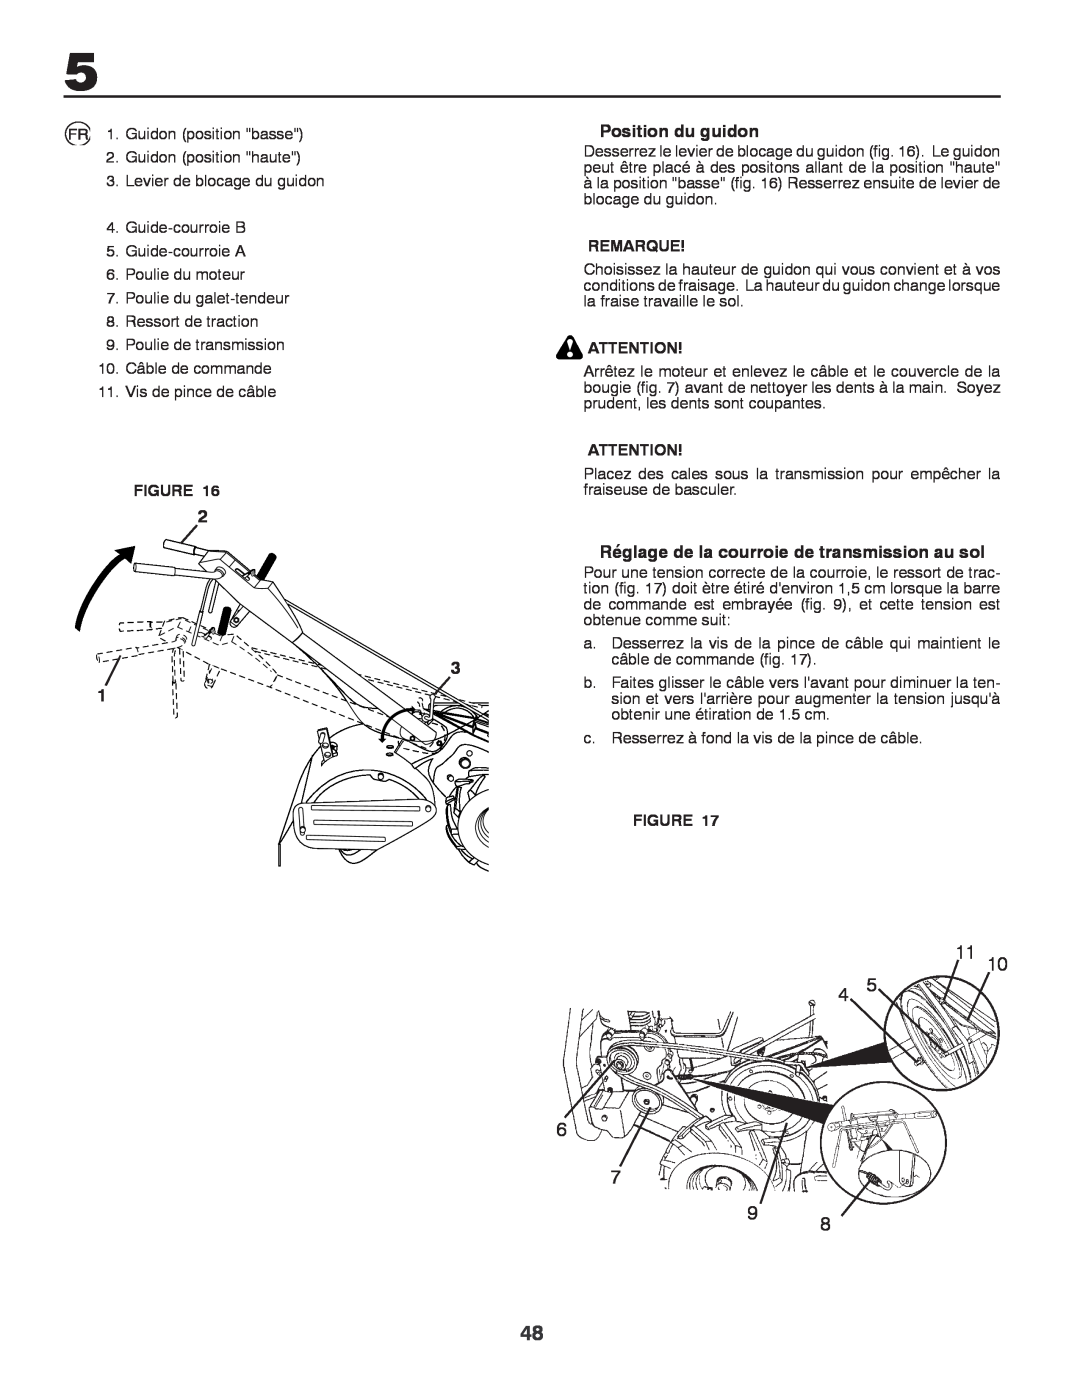 Husqvarna CRT81 instruction manual Position du guidon, Réglage de la courroie de transmission au sol, Remarque 